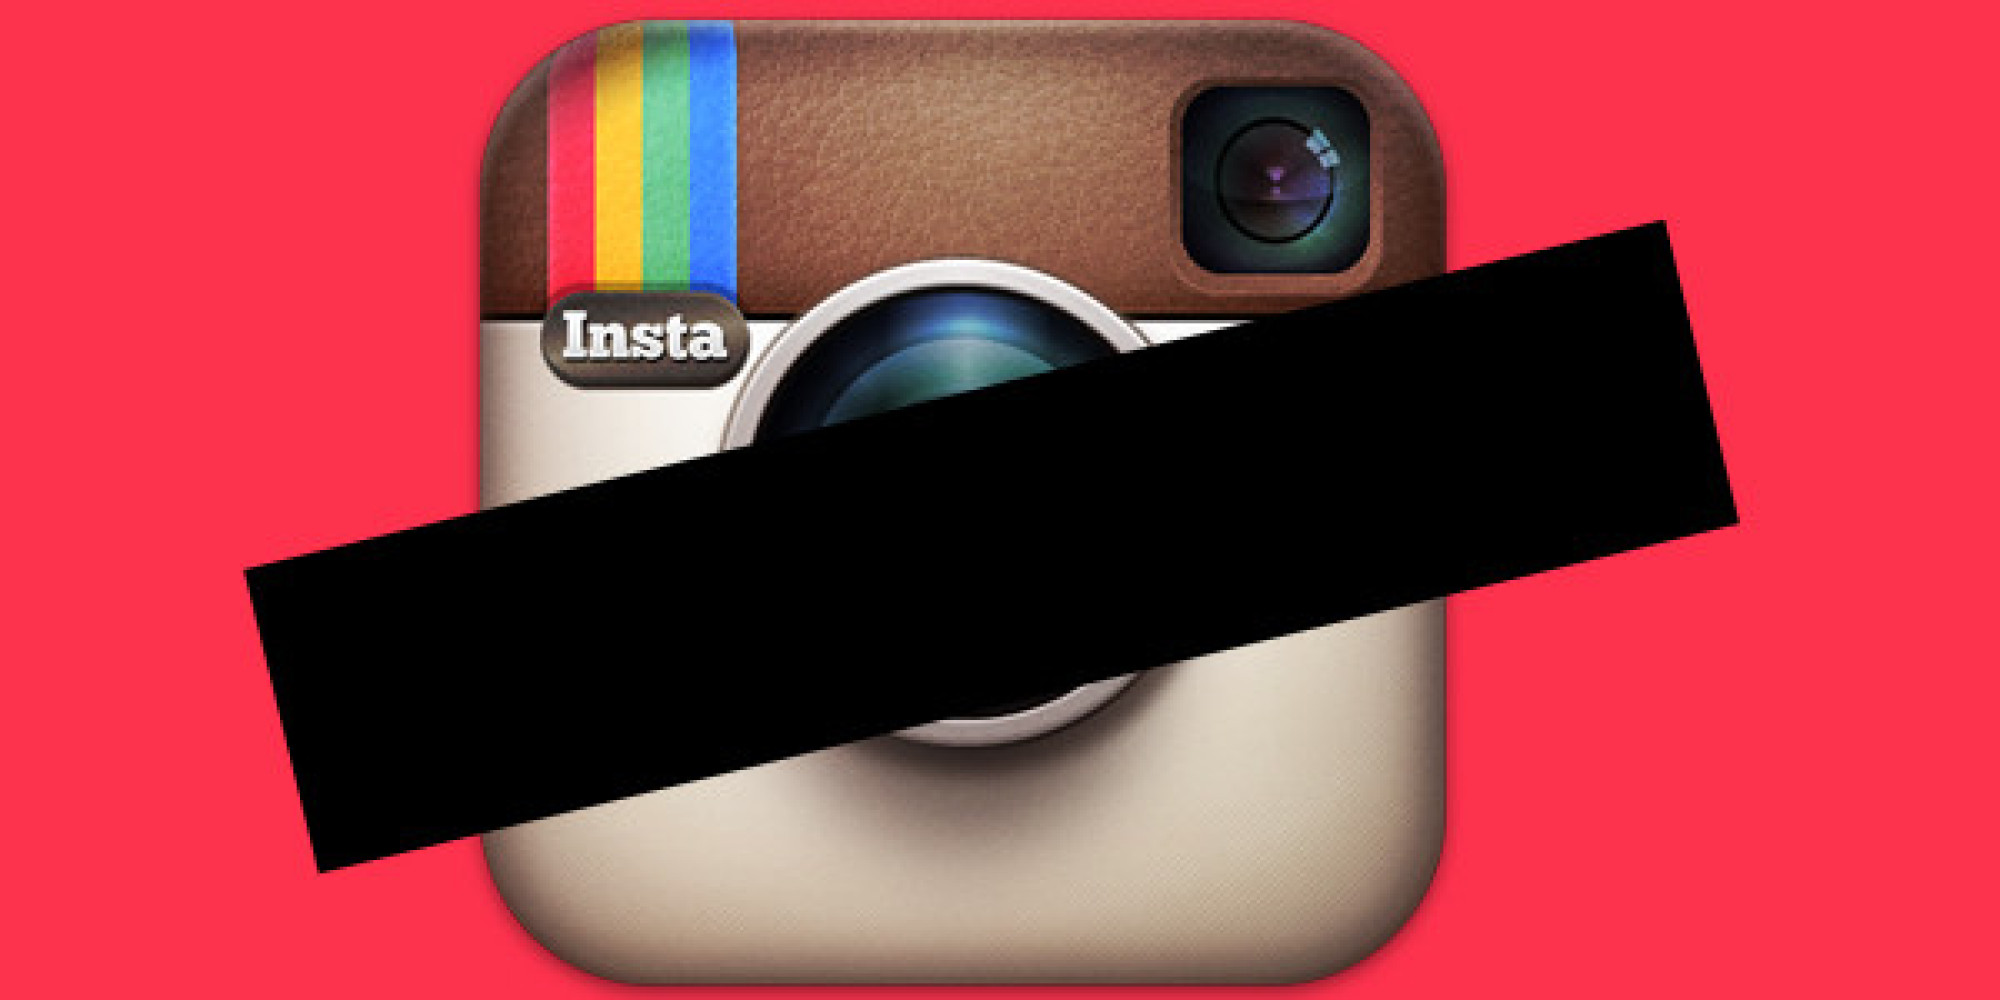 Instagram empezó a bloquear imágenes con contenido explícito o delicado